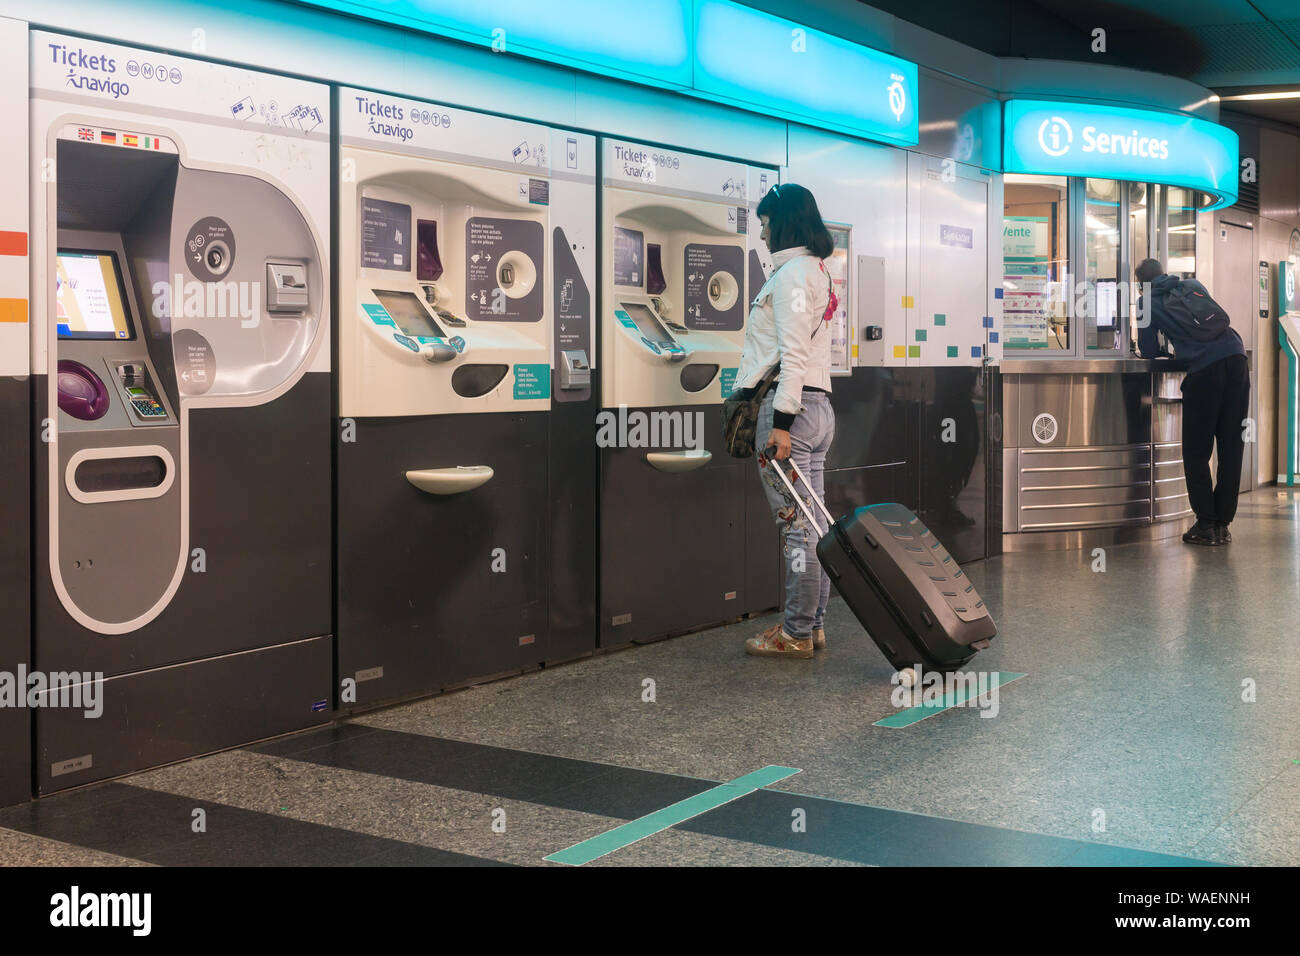 Máquina de billetes de metro de París - una mujer compra de billetes para el metro en París, Francia, Europa. Foto de stock